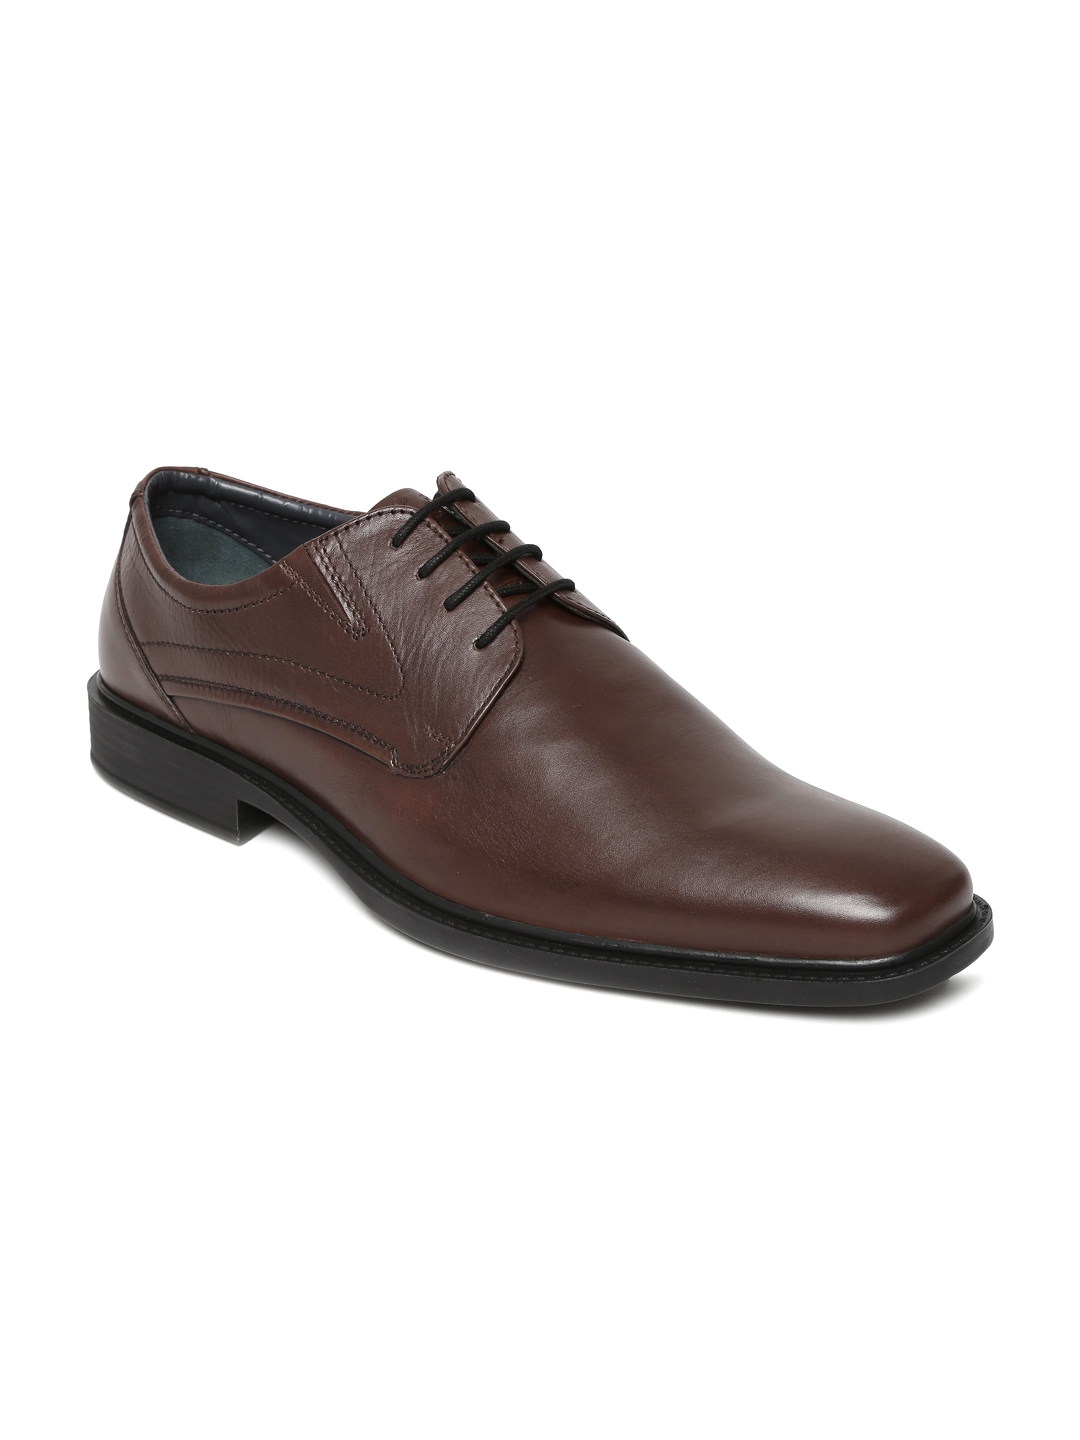 Buy Allen Solly Men Brown Leather Formal Shoes - Formal Shoes for Men ...